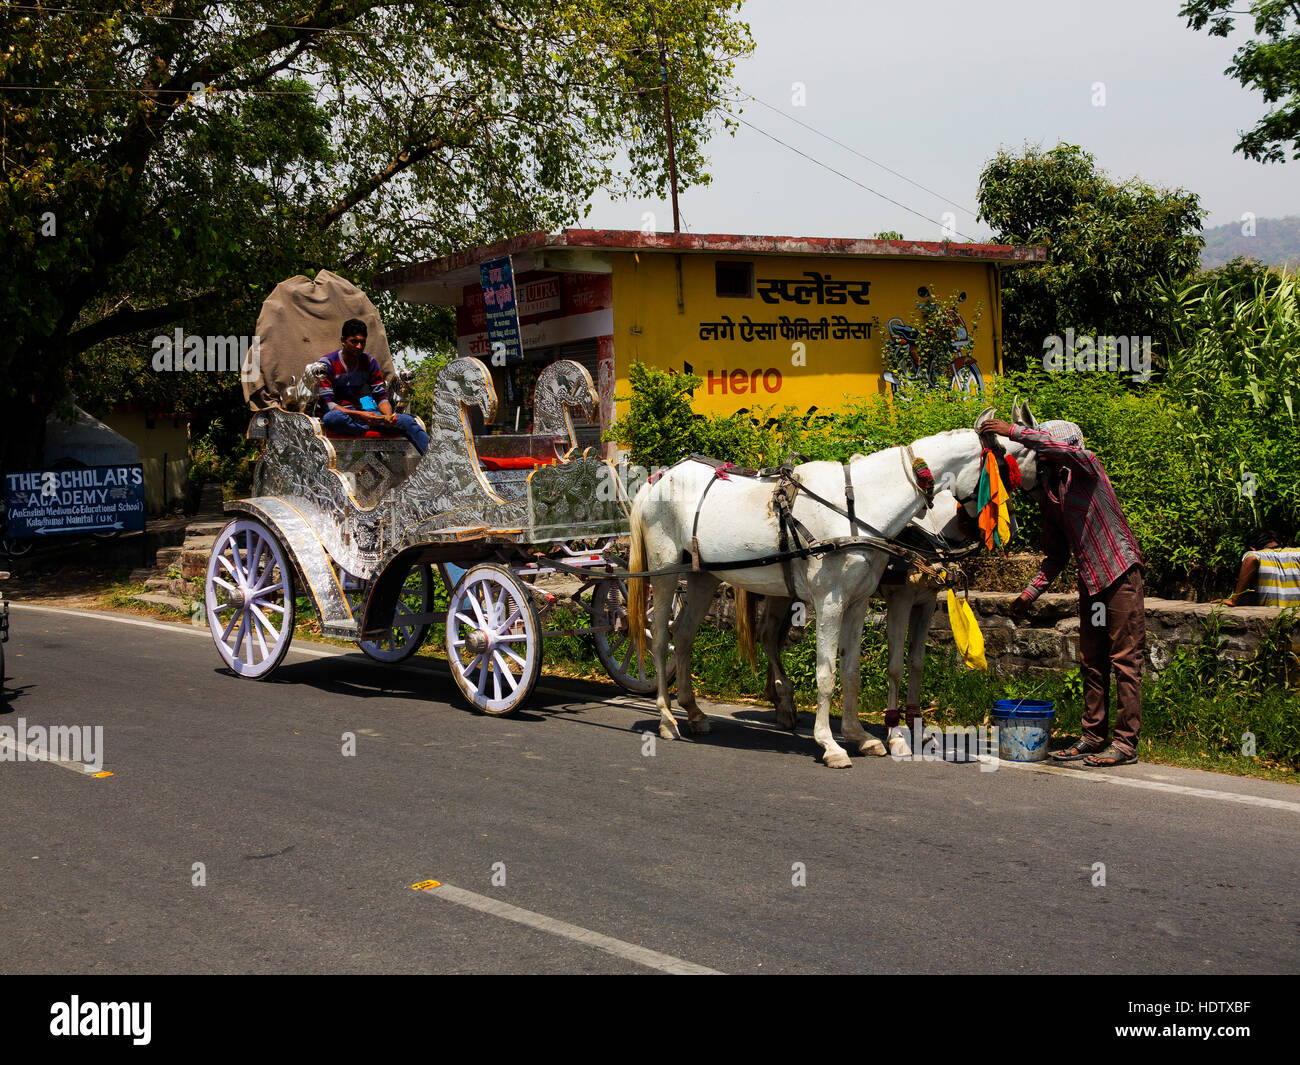 Typische geschmückten indischen Wagen, gezogen von Pferden, bei speziellen Veranstaltungen, Kaladunghi, Indien verwendet Stockfoto